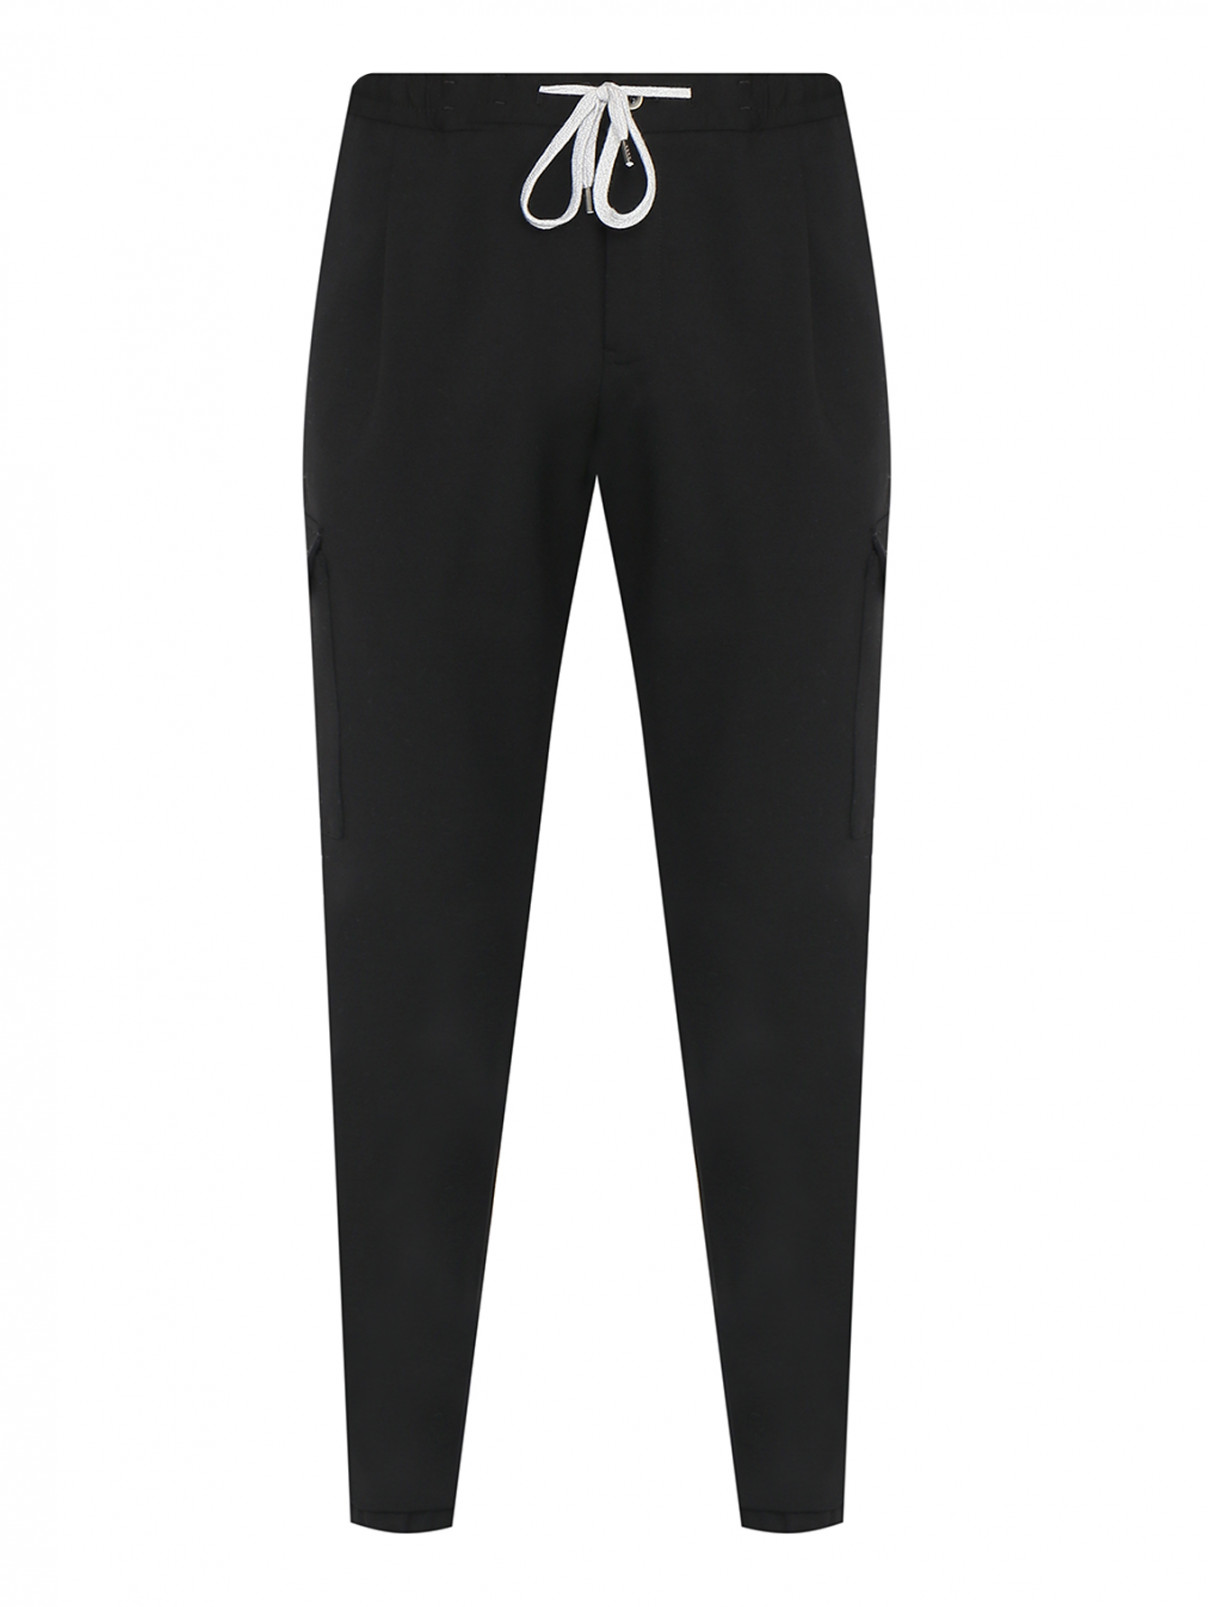 Трикотажные брюки на резинке с карманами PT Torino  –  Общий вид  – Цвет:  Черный